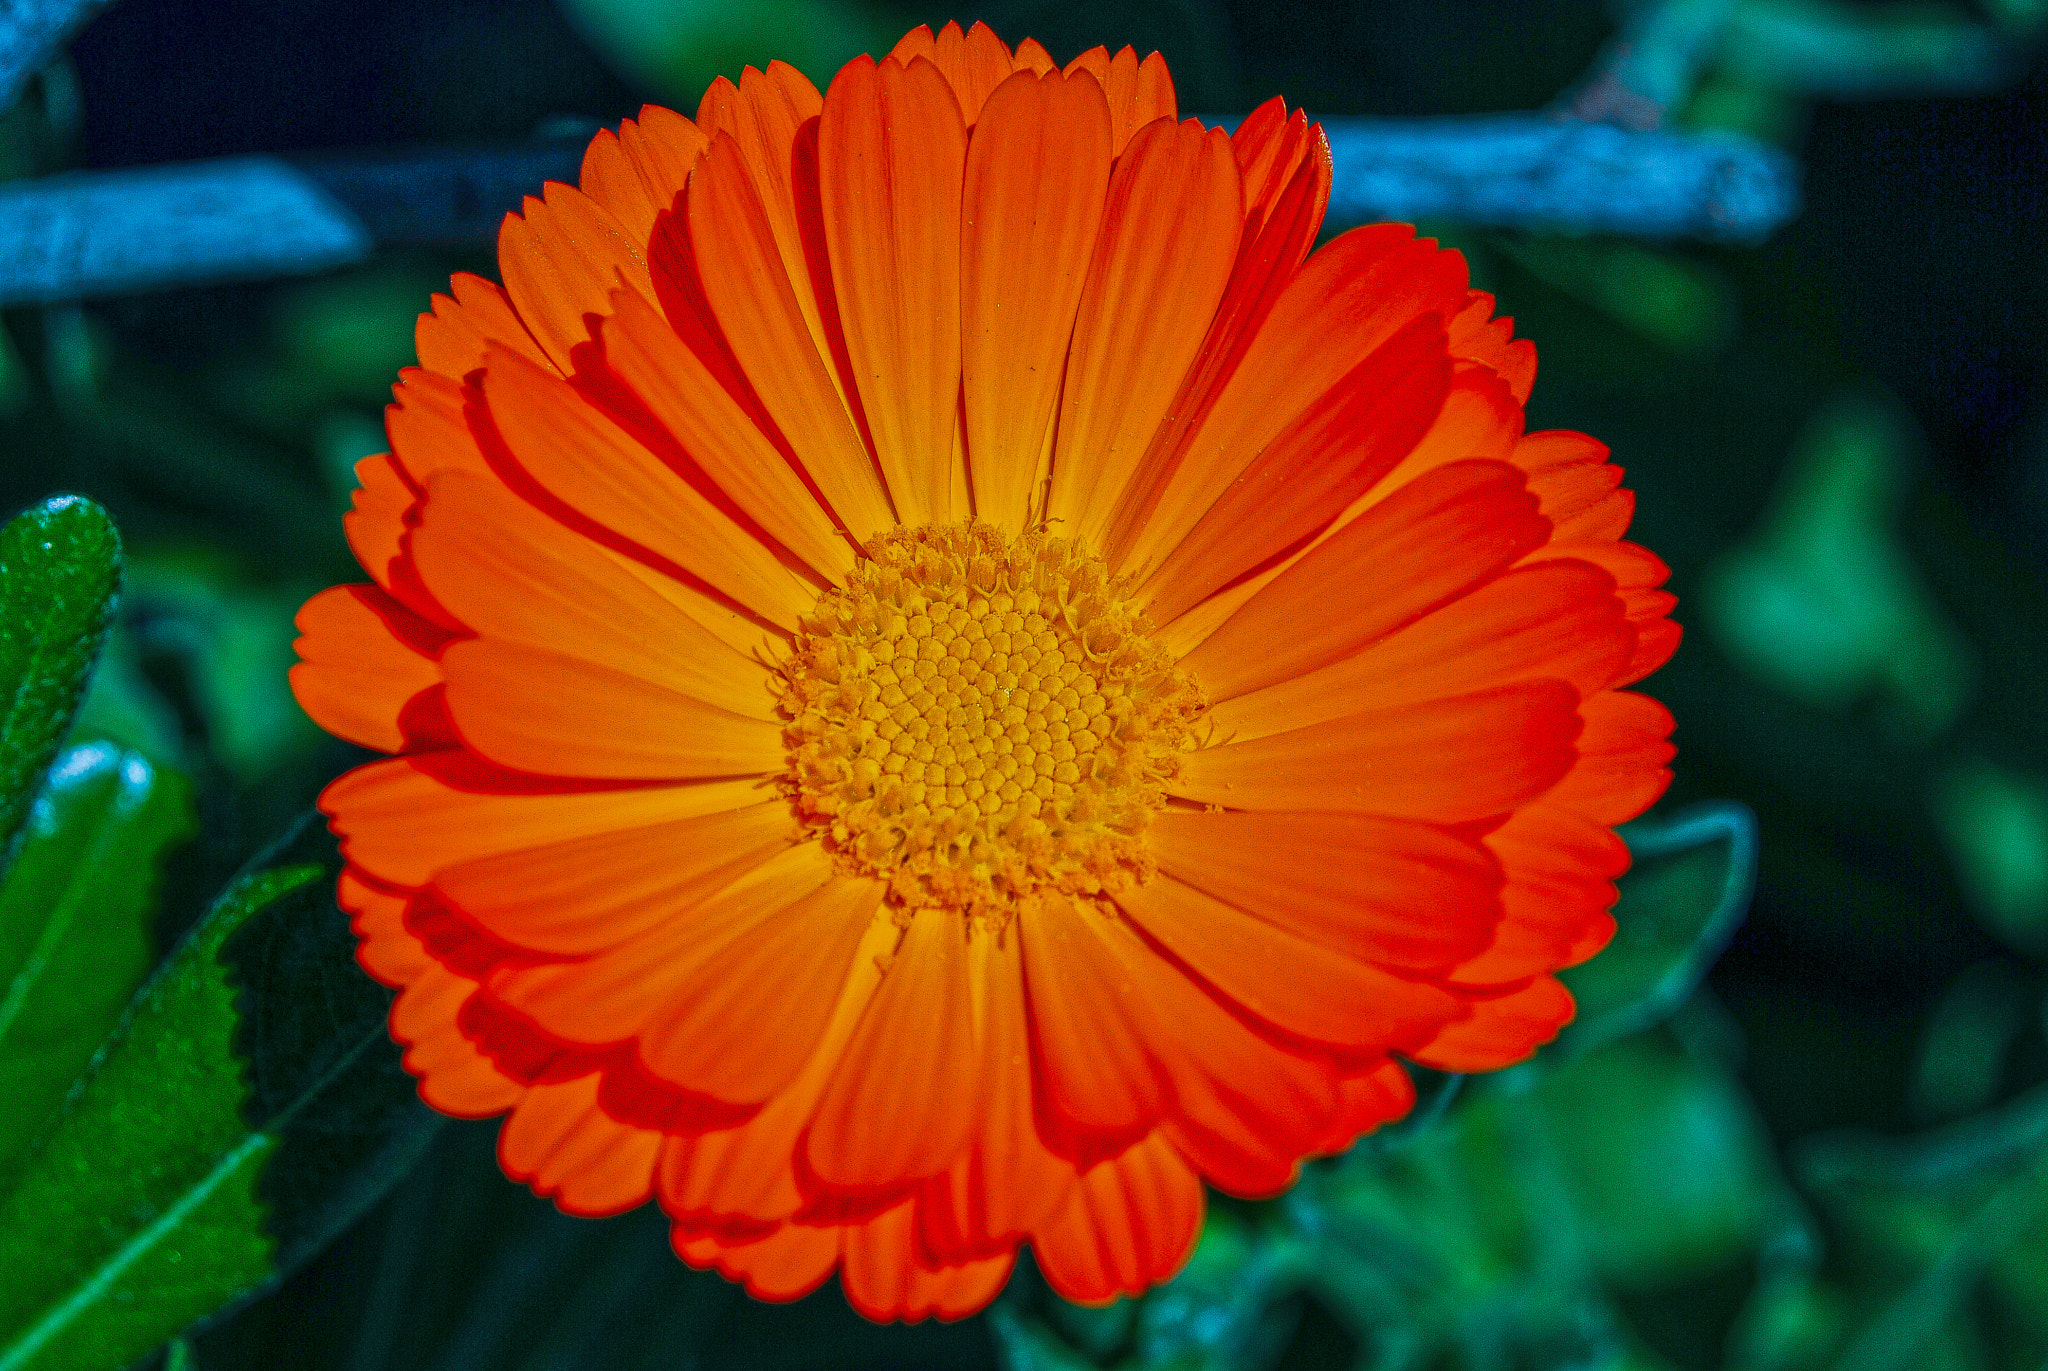 AF Zoom-Nikkor 35-80mm f/4-5.6D N sample photo. Flower photography